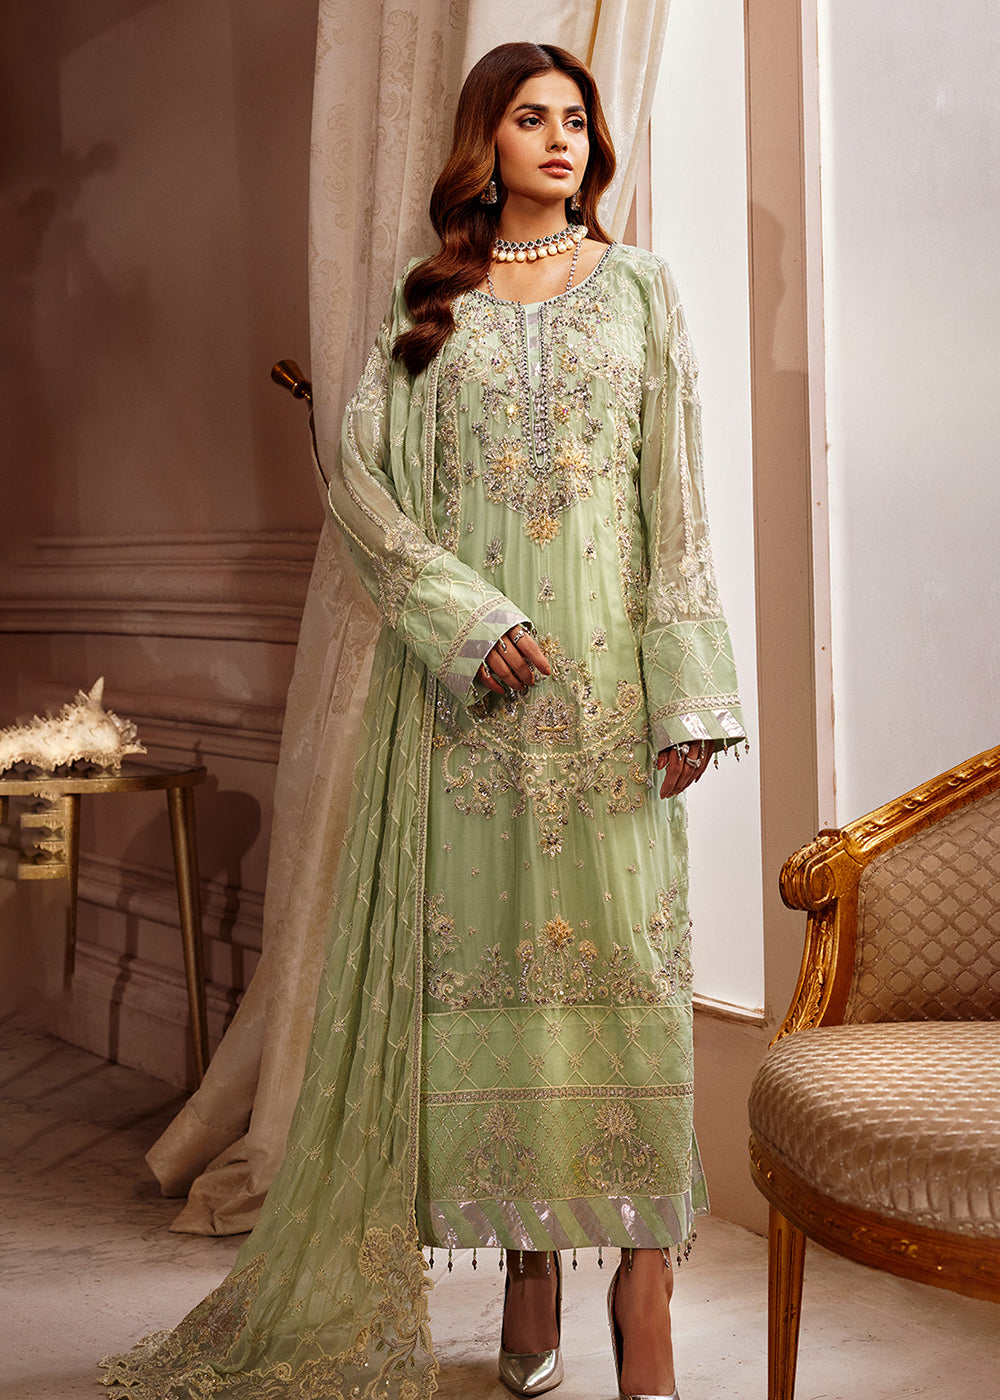 Buy Now Emaan Adeel | Elaine Wedding Formals 2023 | EL-09 Online in USA, UK, Canada & Worldwide at Empress Clothing. 